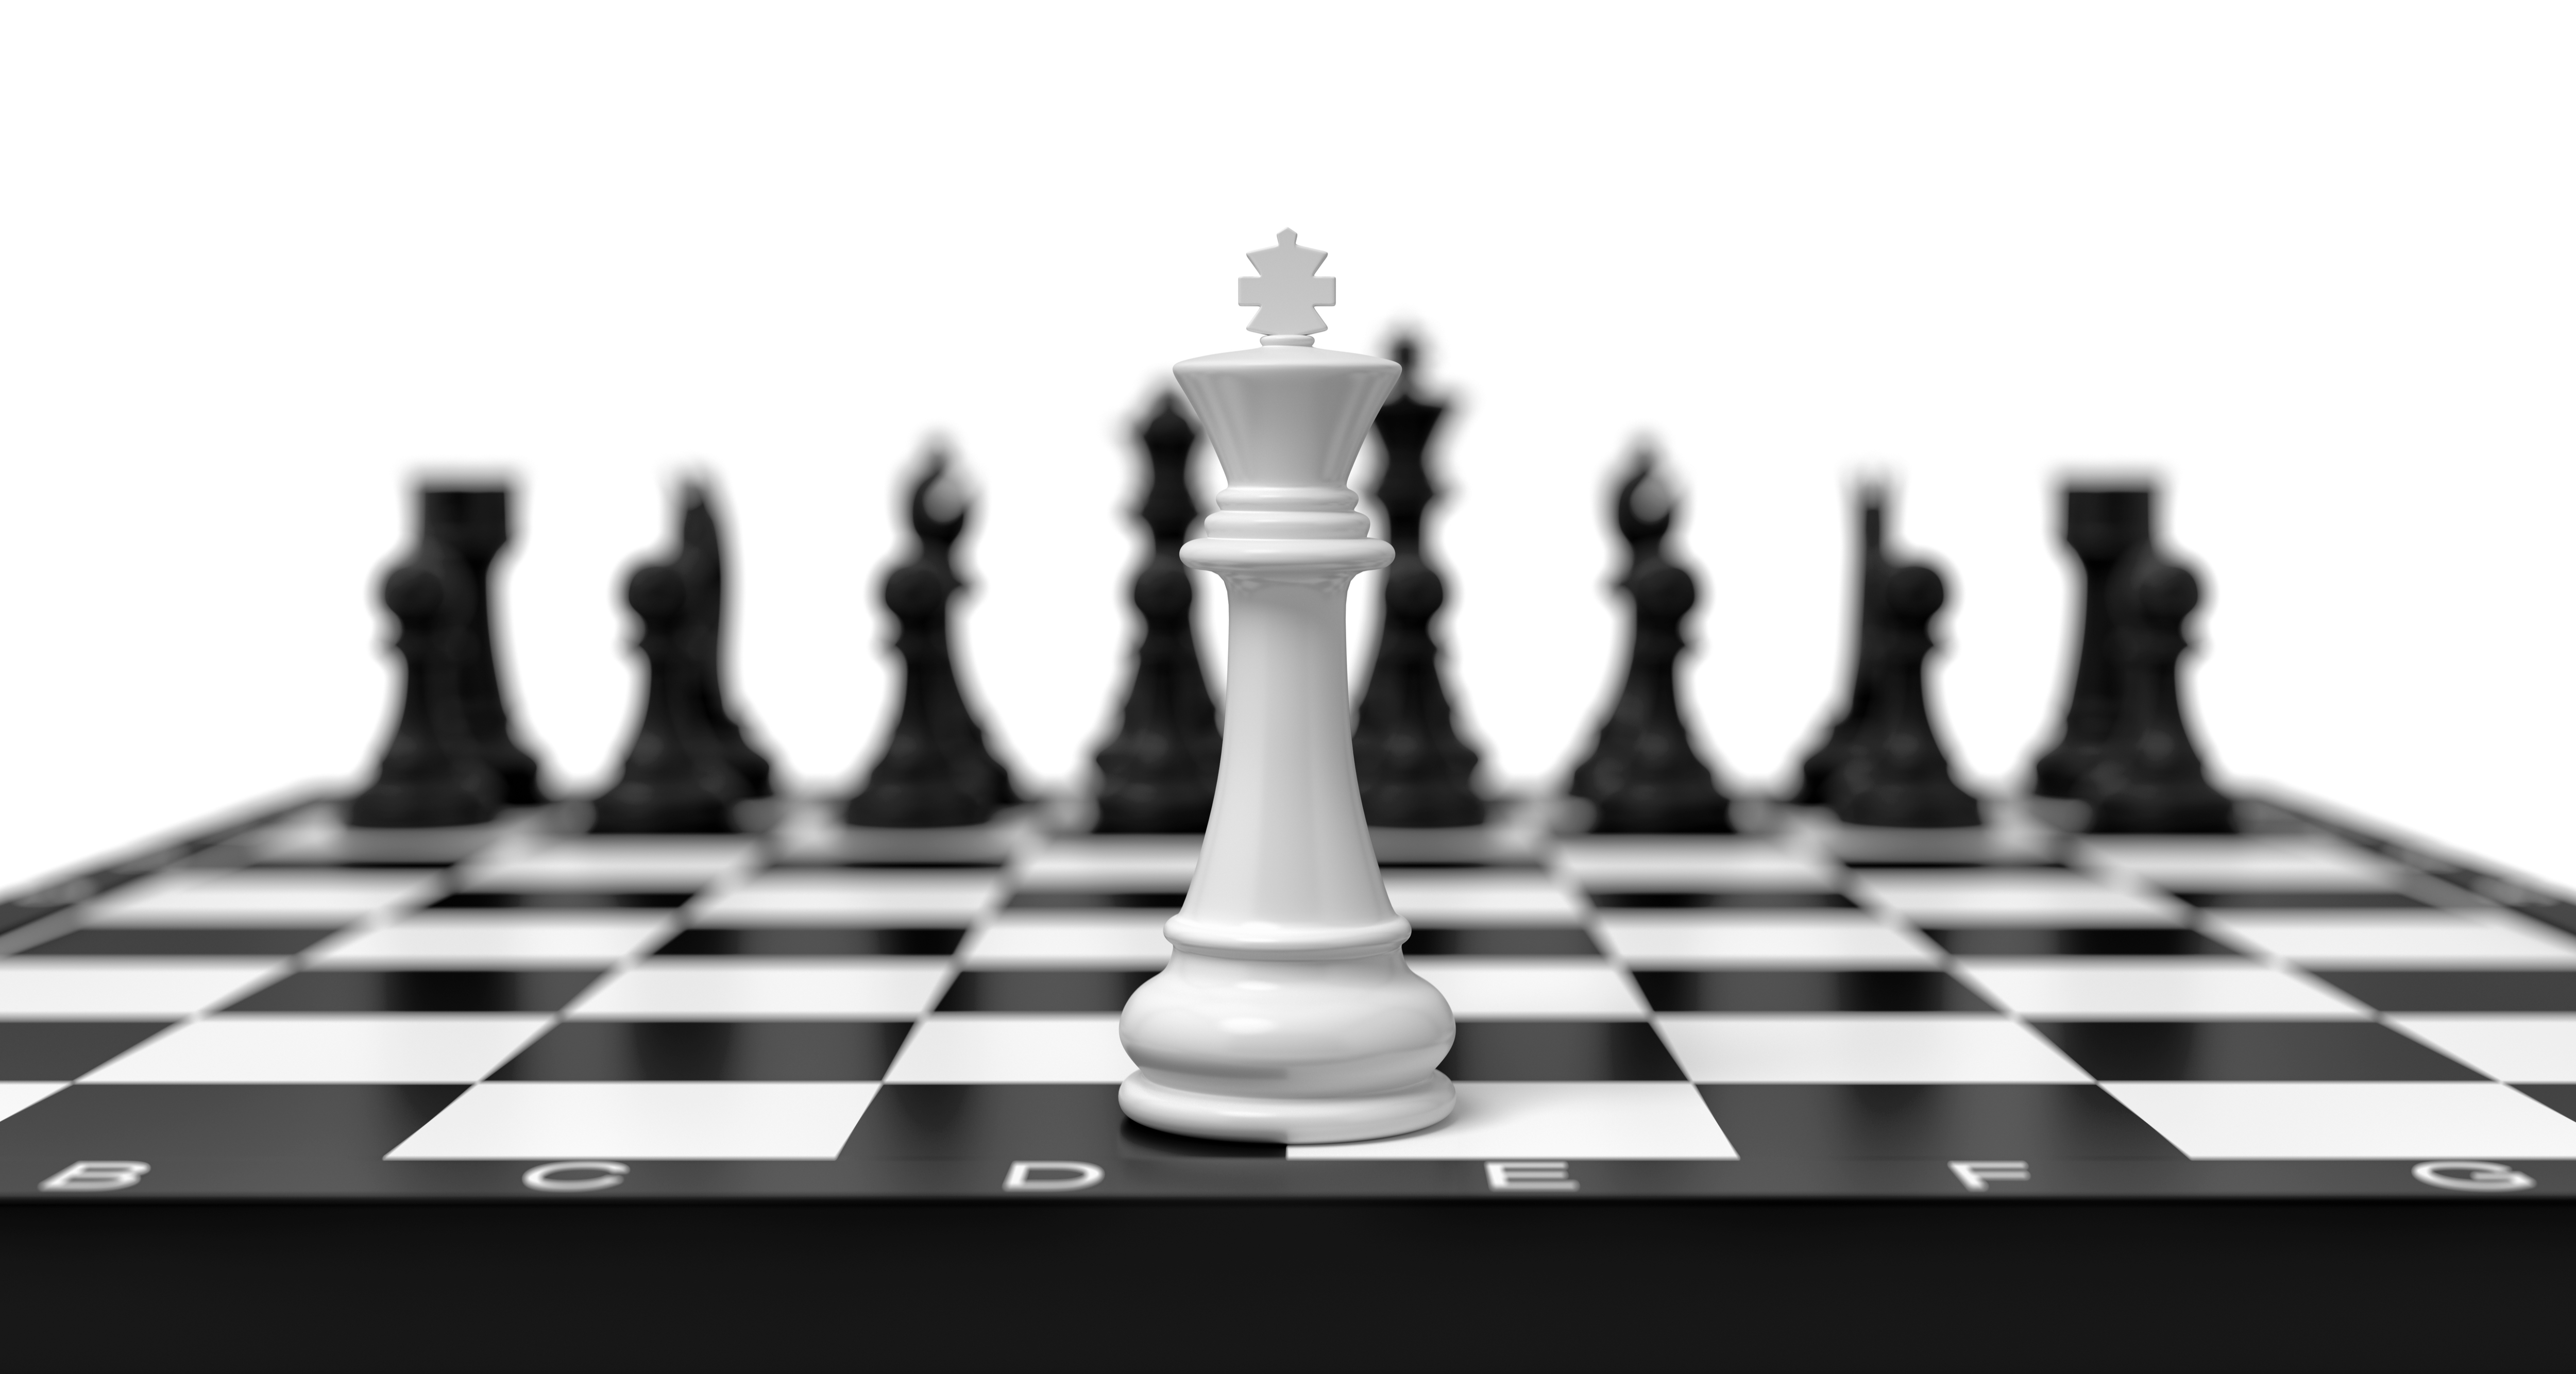 Королева против короля. Шахматные фигуры фон. Шахматный Король. Шахматная доска в перспективе. Шахматные фигуры в перспективе.